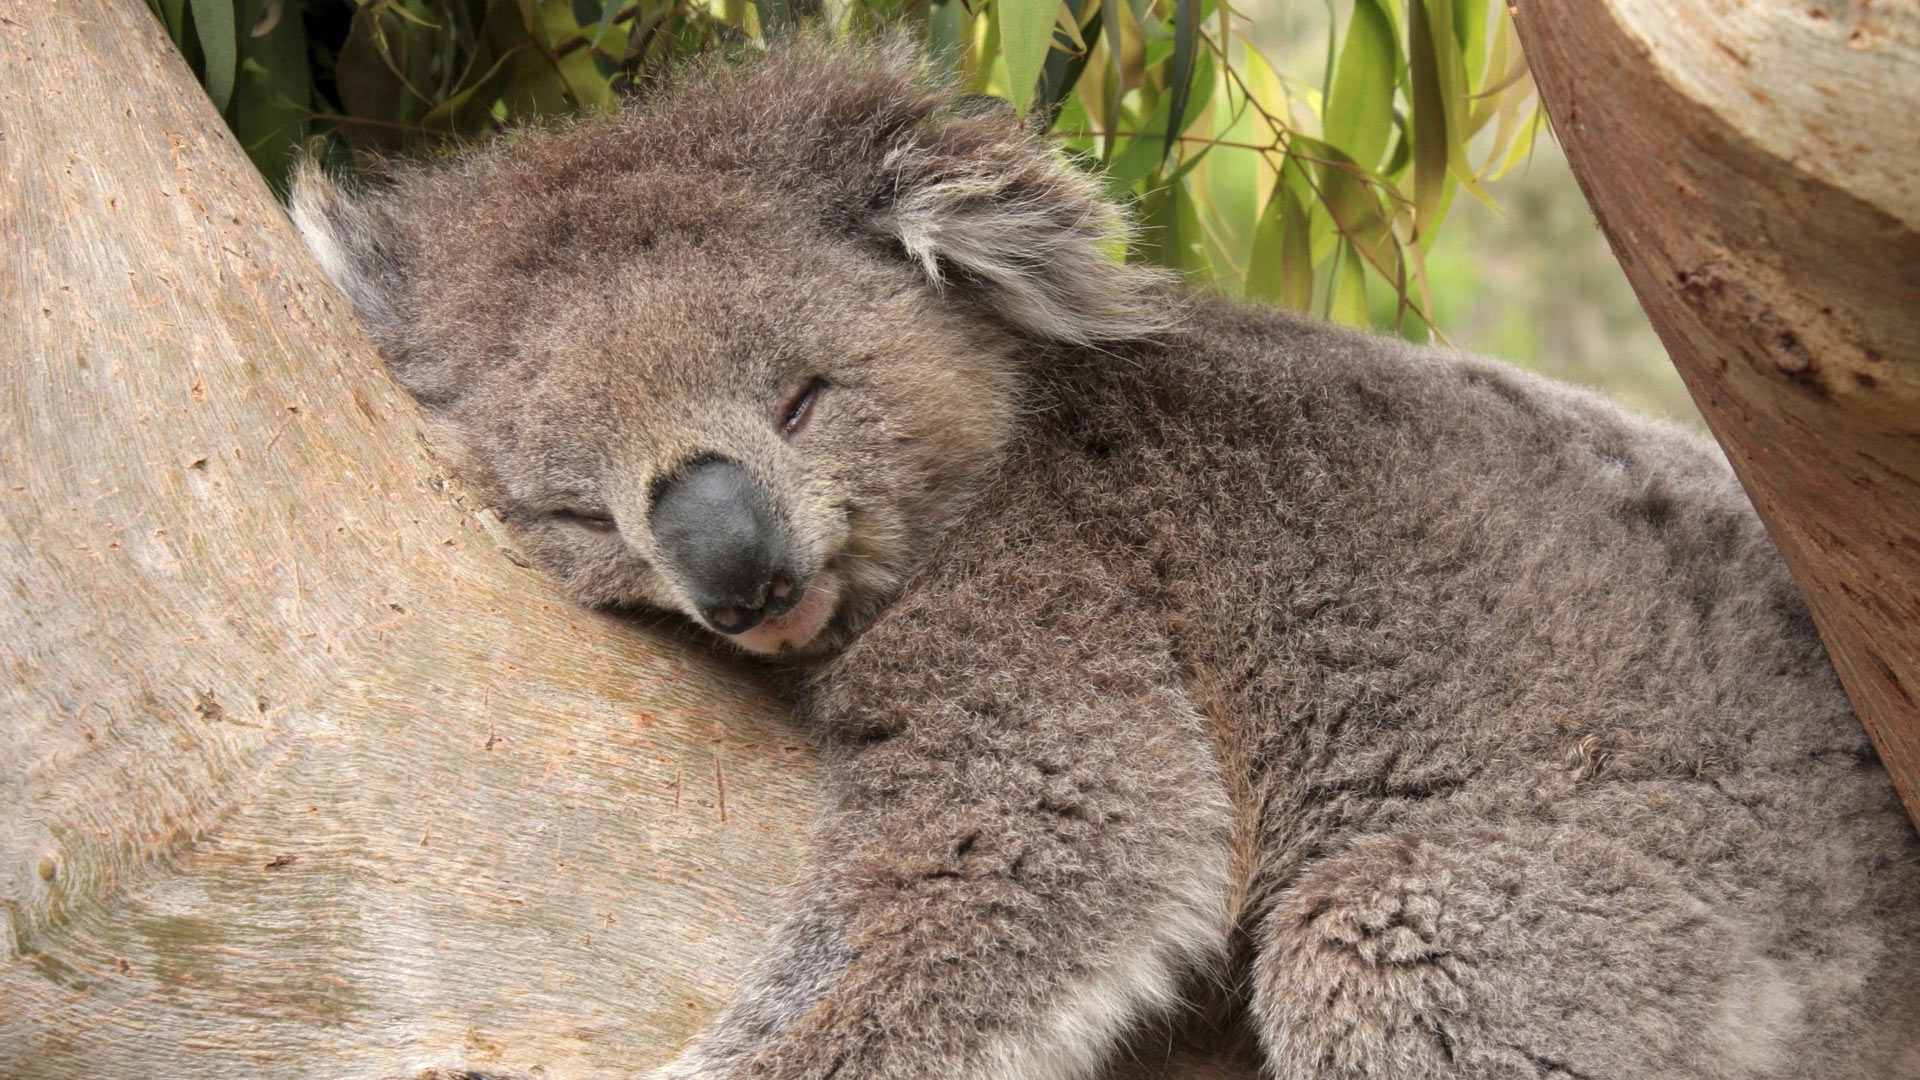 Photos of a sleeping koala